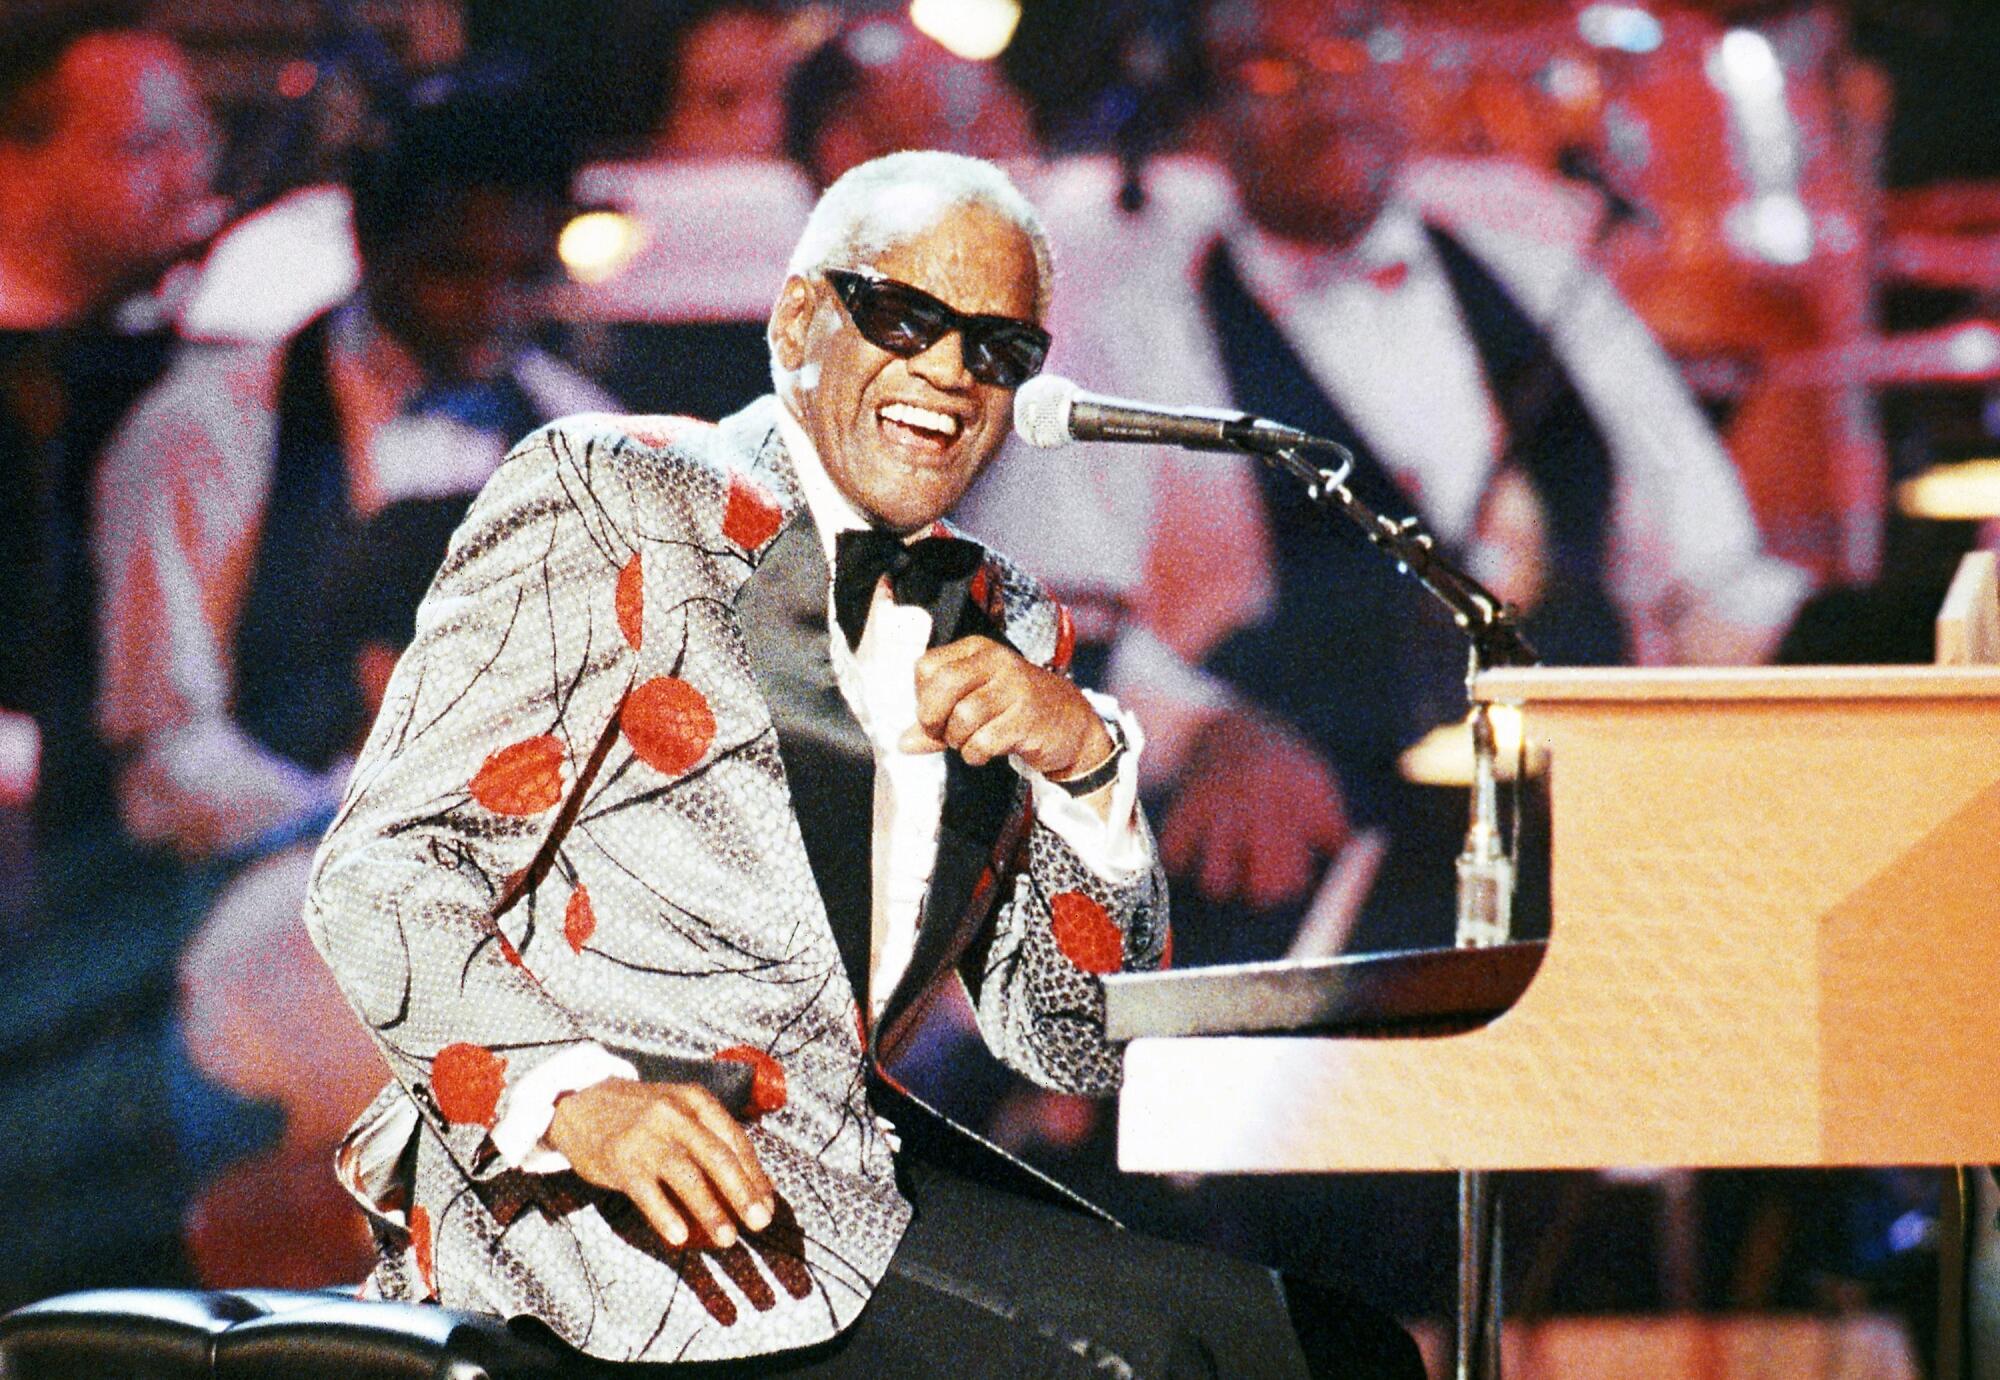 Ray Charles at "Ray Charles: 50 Years in Music, uh-huh," in Pasadena, Sept. 20, 1991.